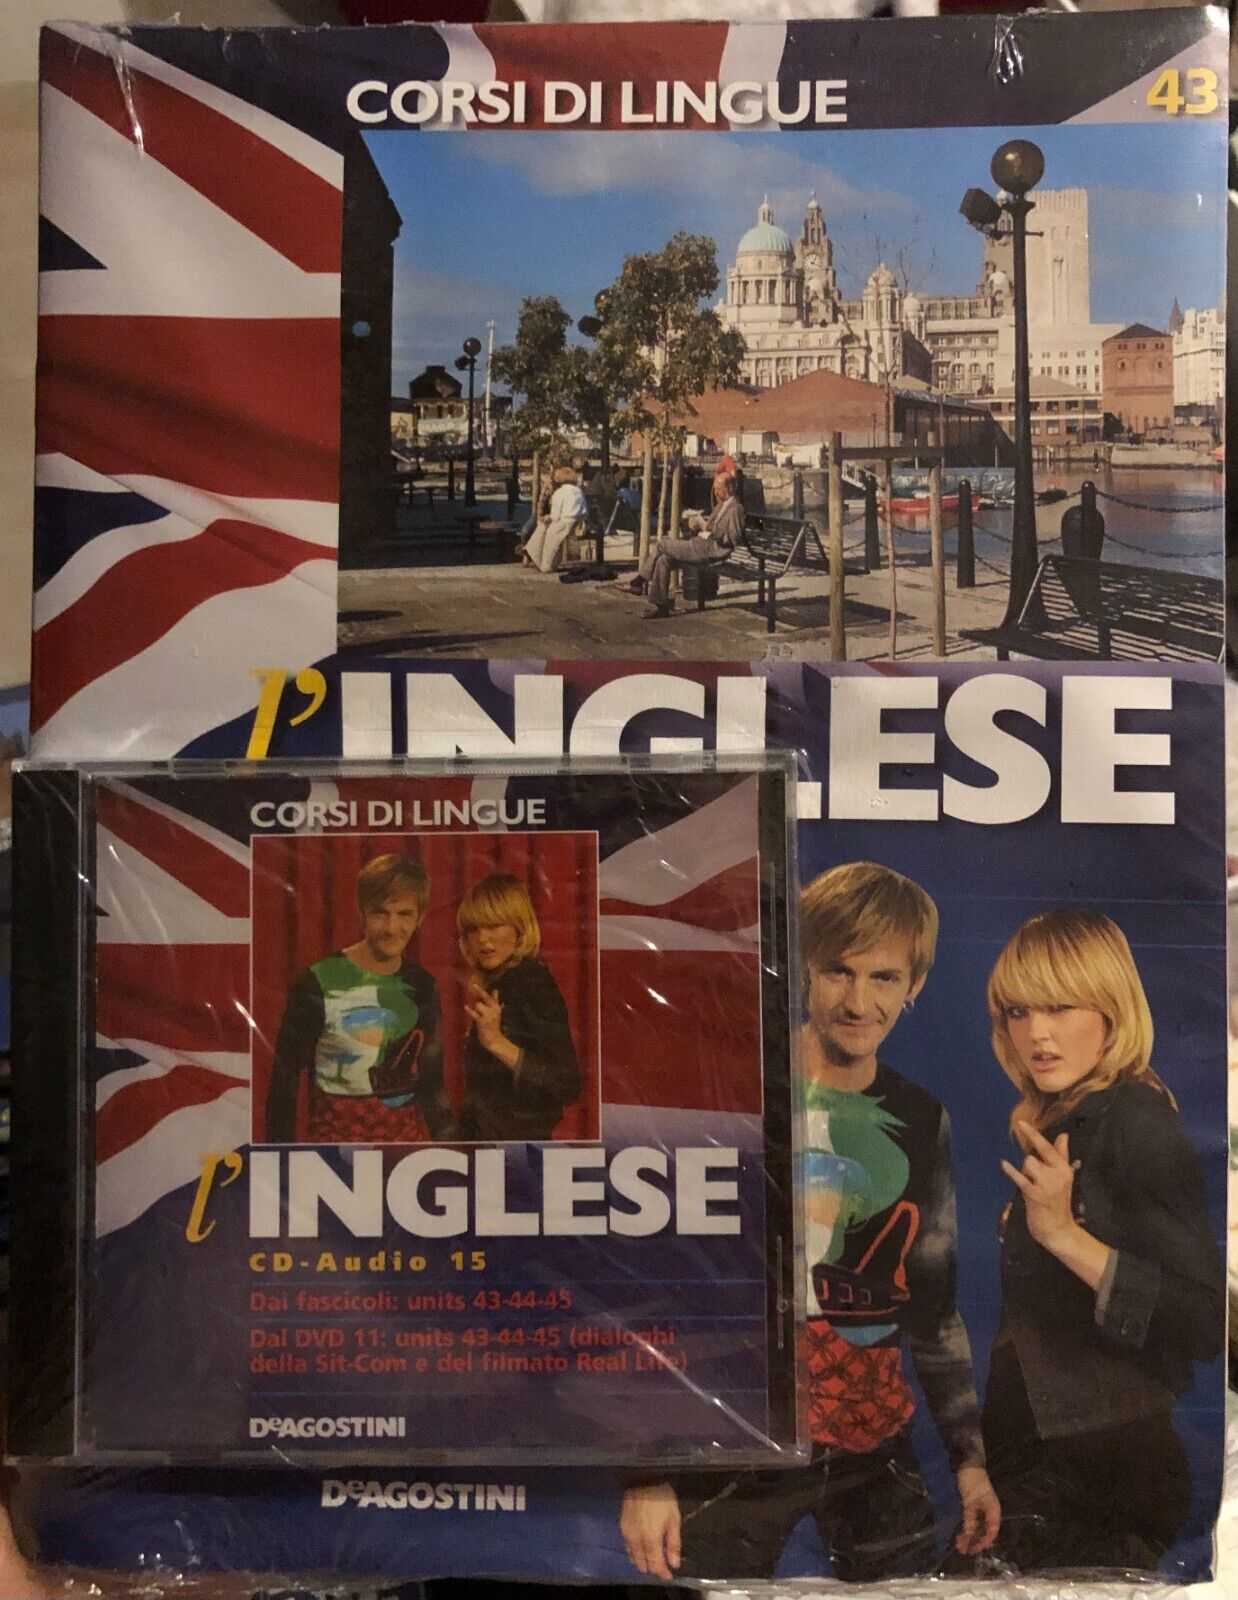 Corsi di lingue L'inglese fascicolo 43+CD di Aa.vv.,  2008,  Deagostini